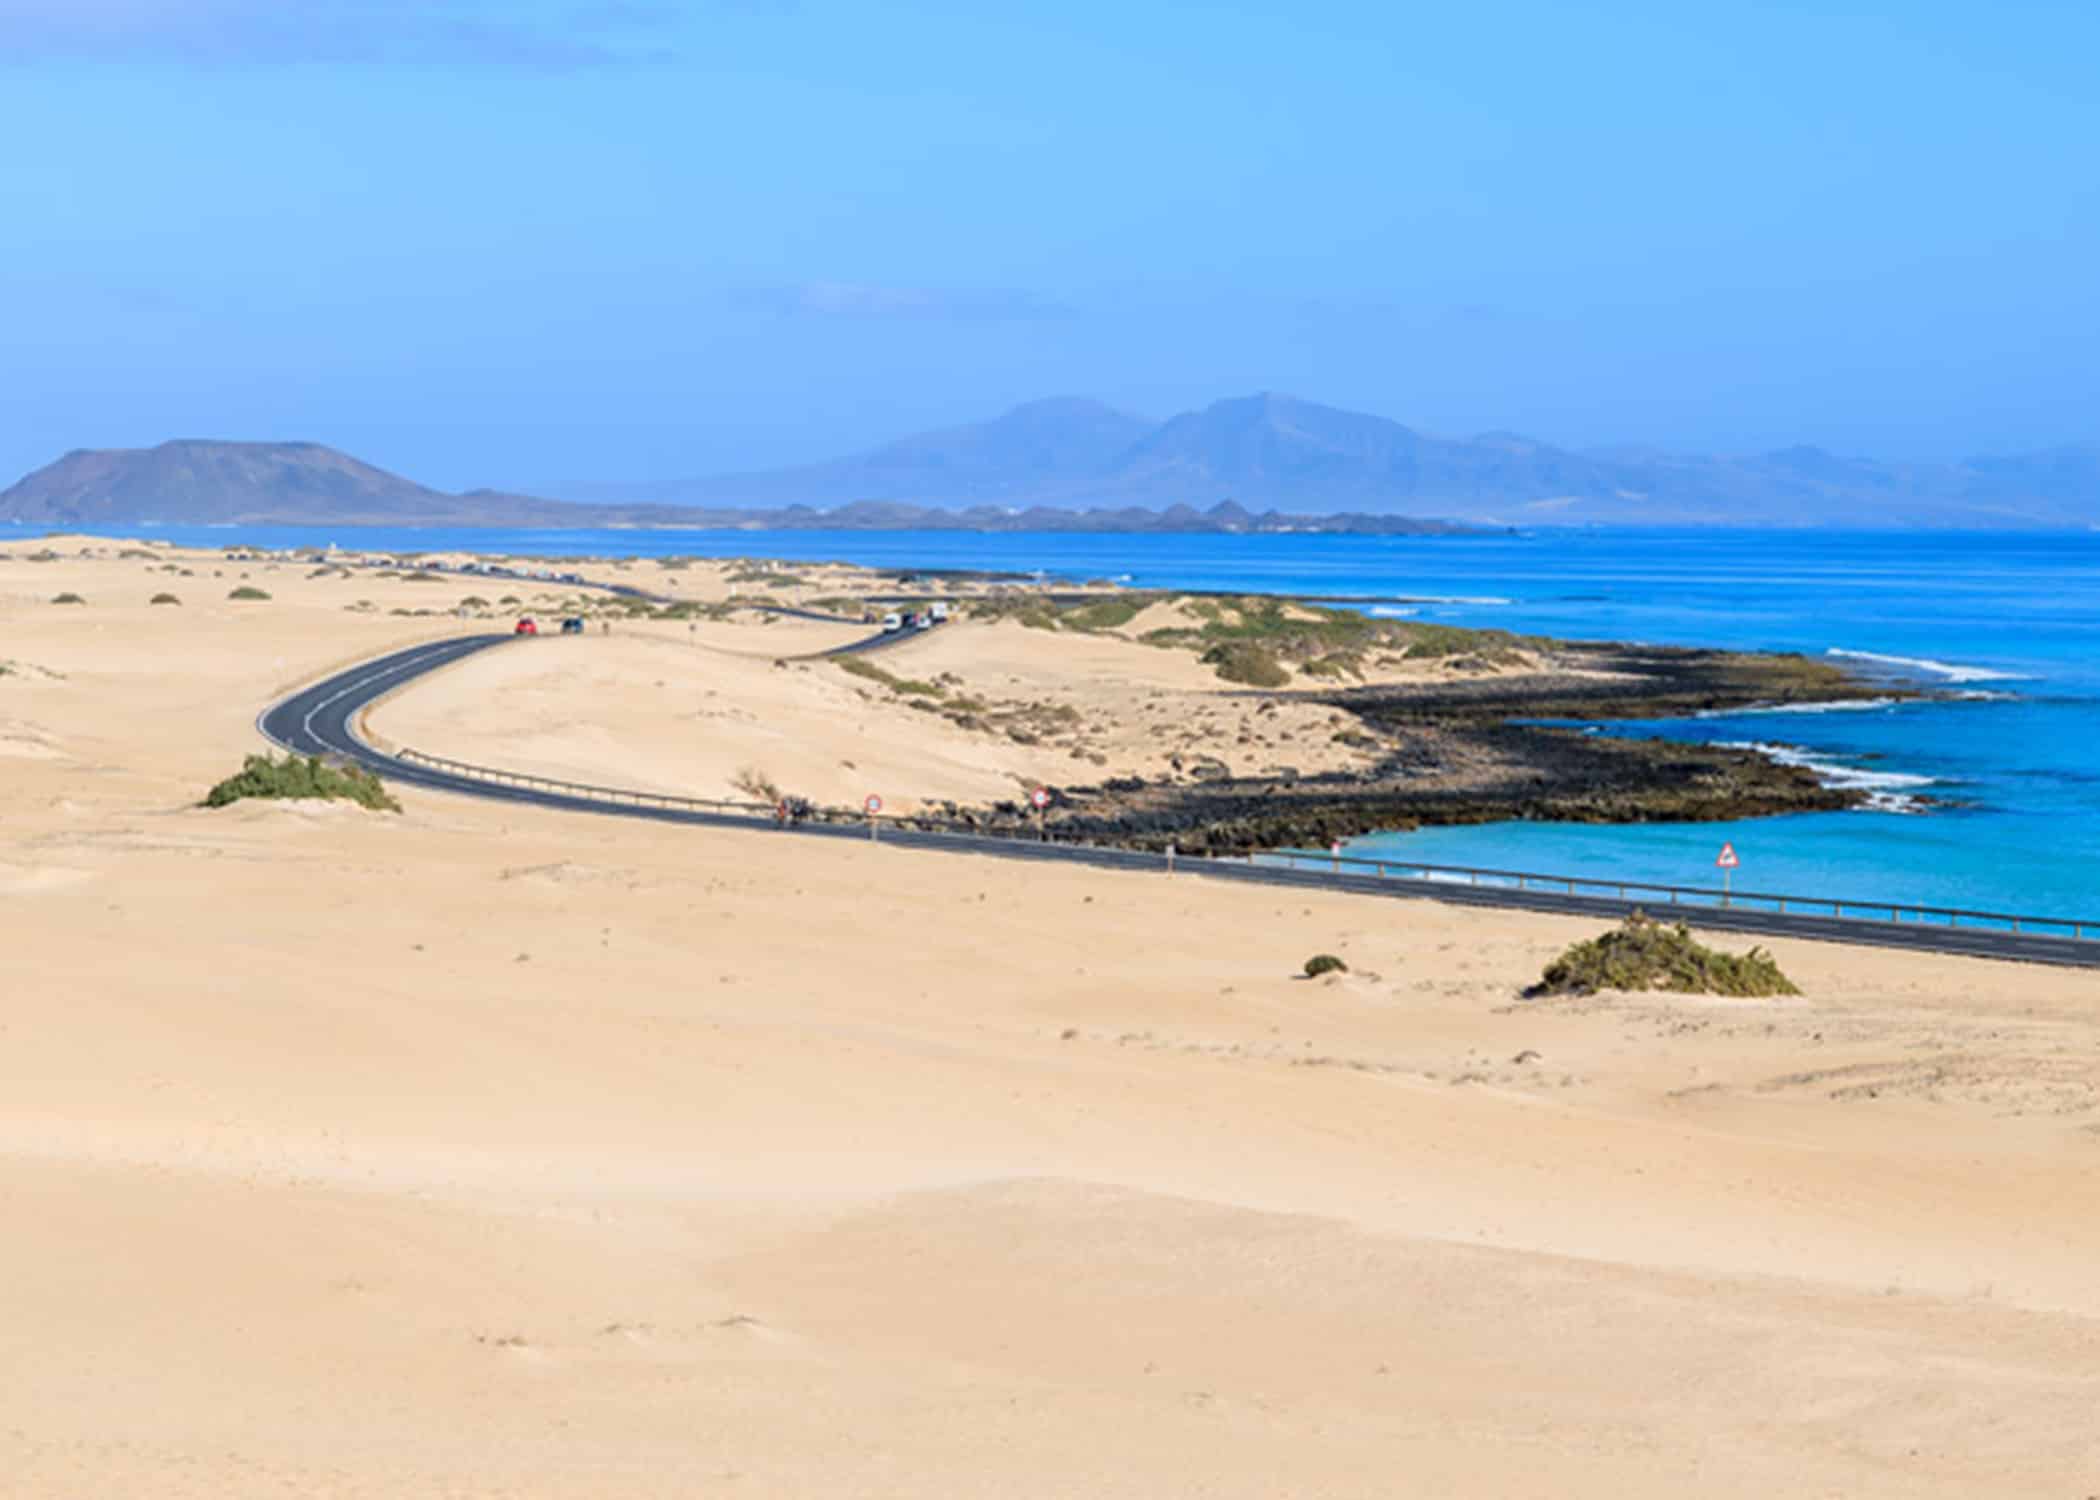 The Sand dunes of Corralejo